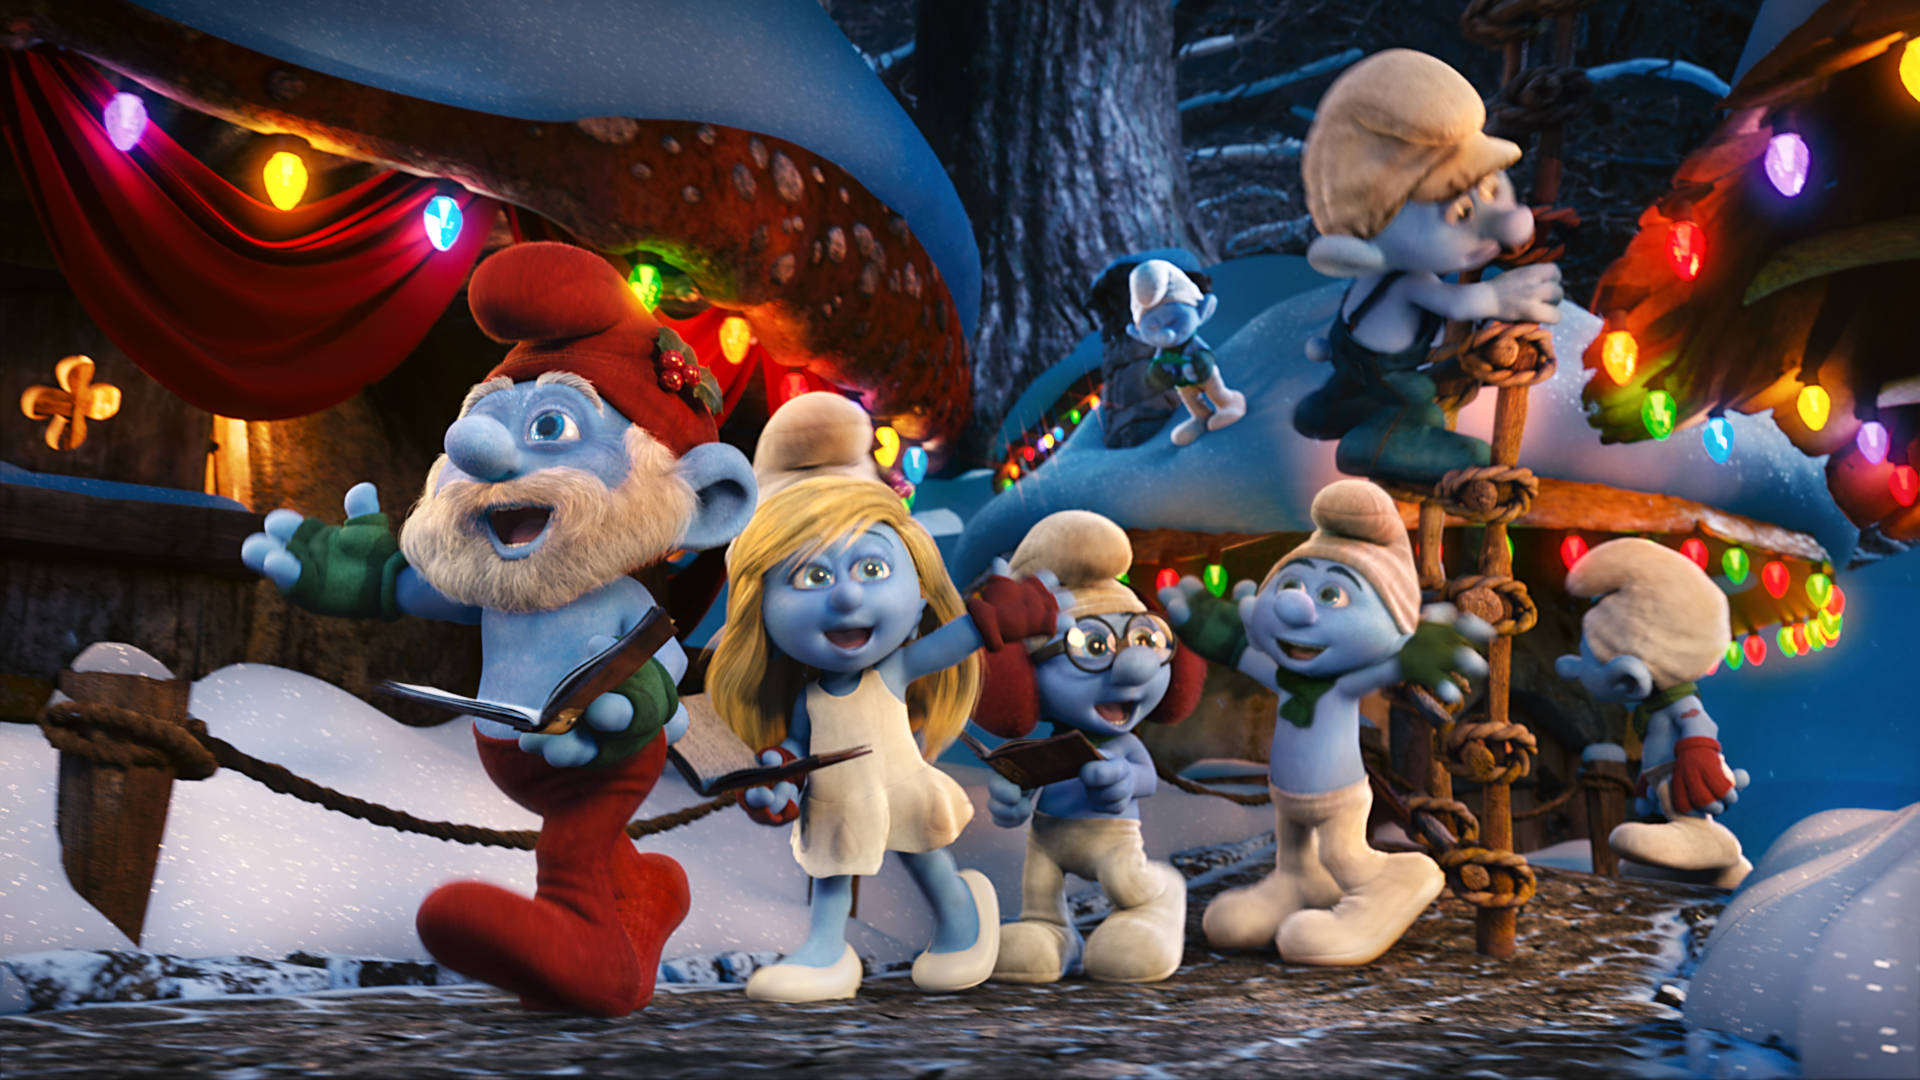 The Smurf Christmas Special